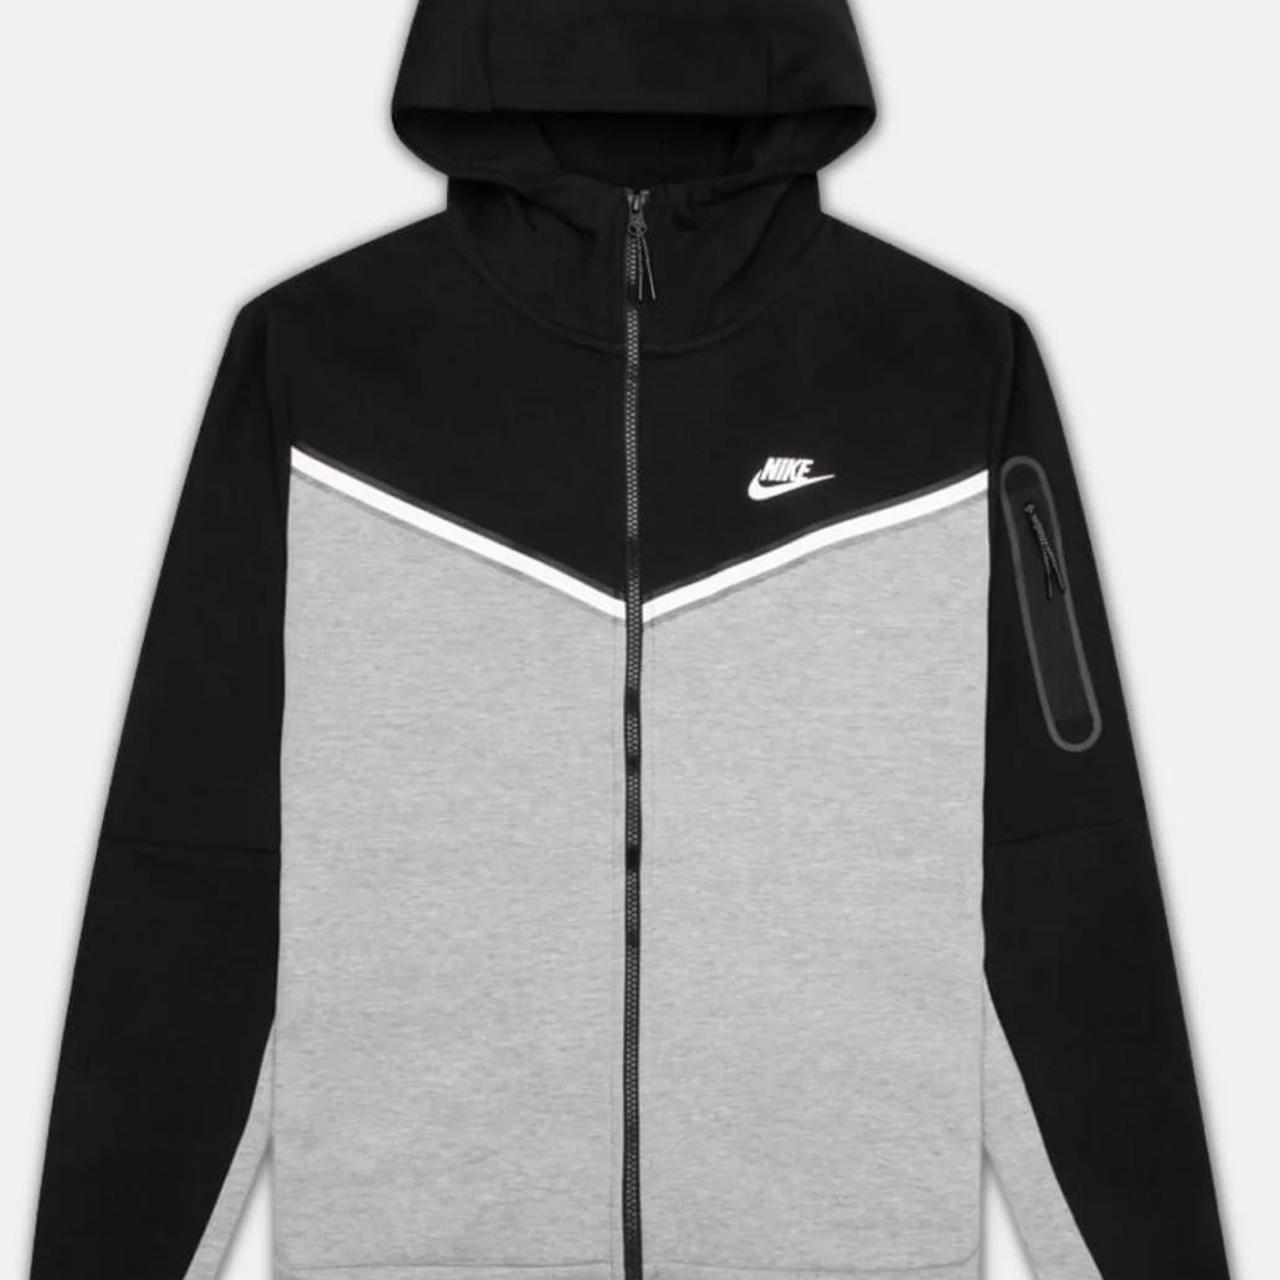 Nike tech fleece black and grey #nike #techfleece... - Depop